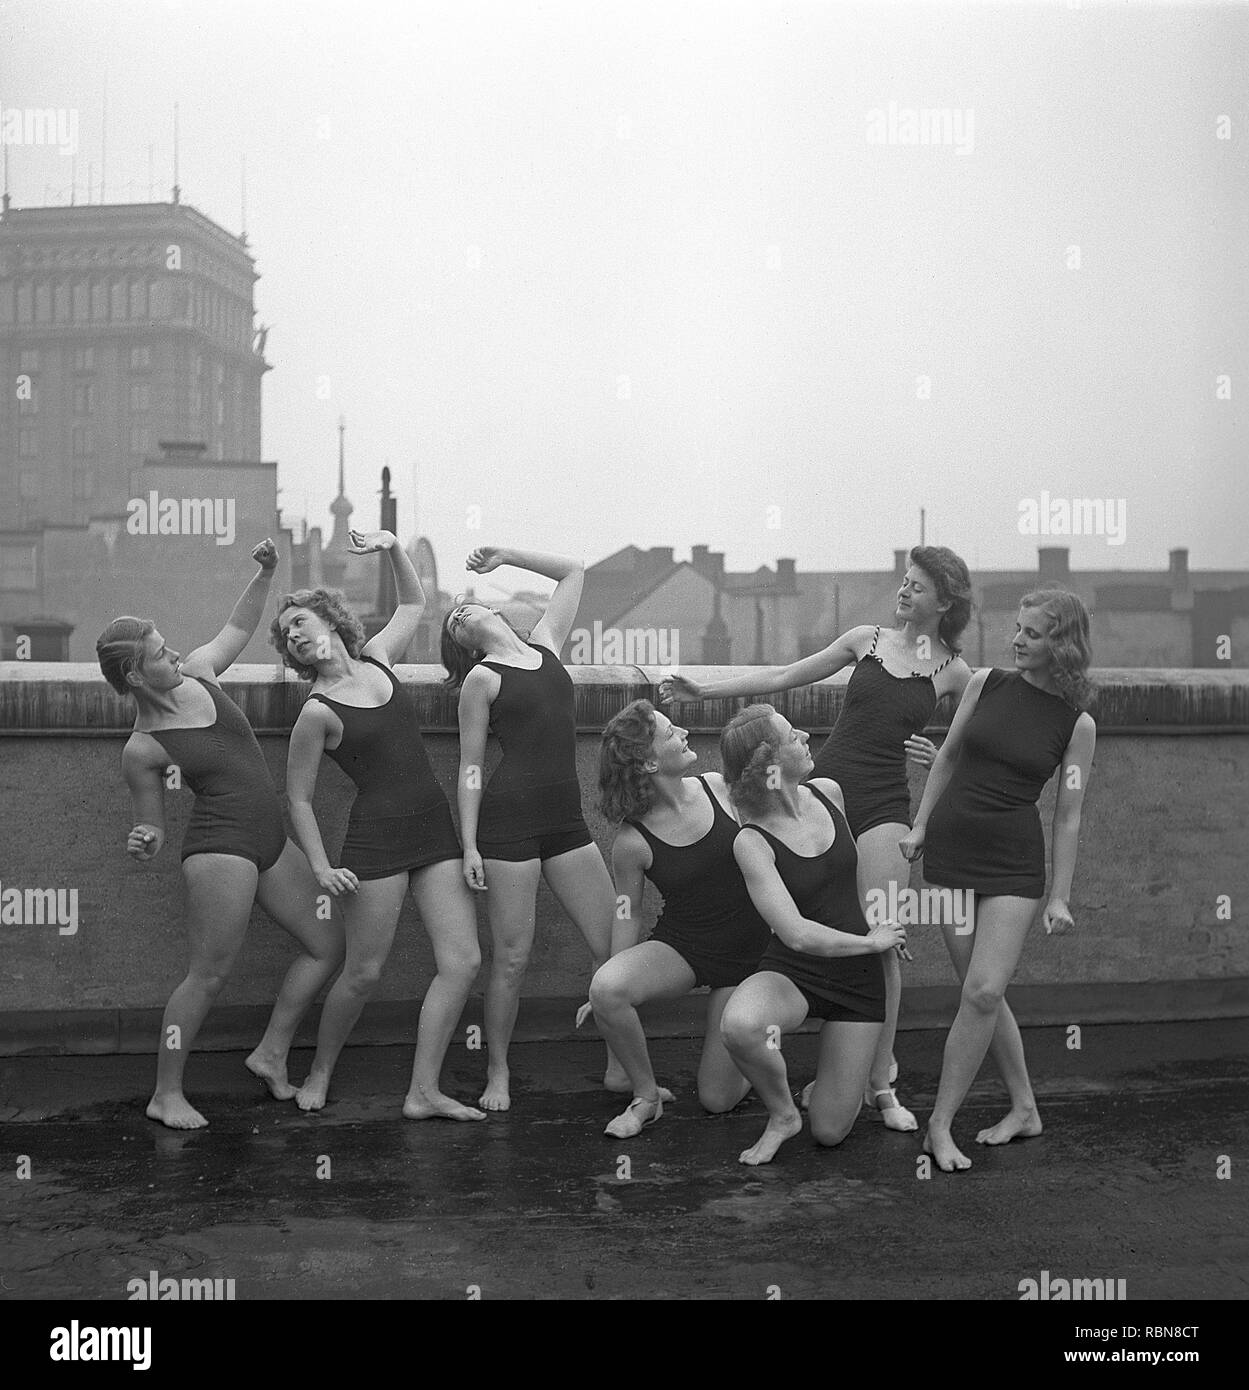 Turnerinnen in den 1940er Jahren. Eine Gruppe von Frauen, die Turnerinnen und Turner zusammen Training auf einem Gebäude sind. Schweden Foto Kristoffersson Ref O 7-1-6. Schweden 1945 Stockfoto